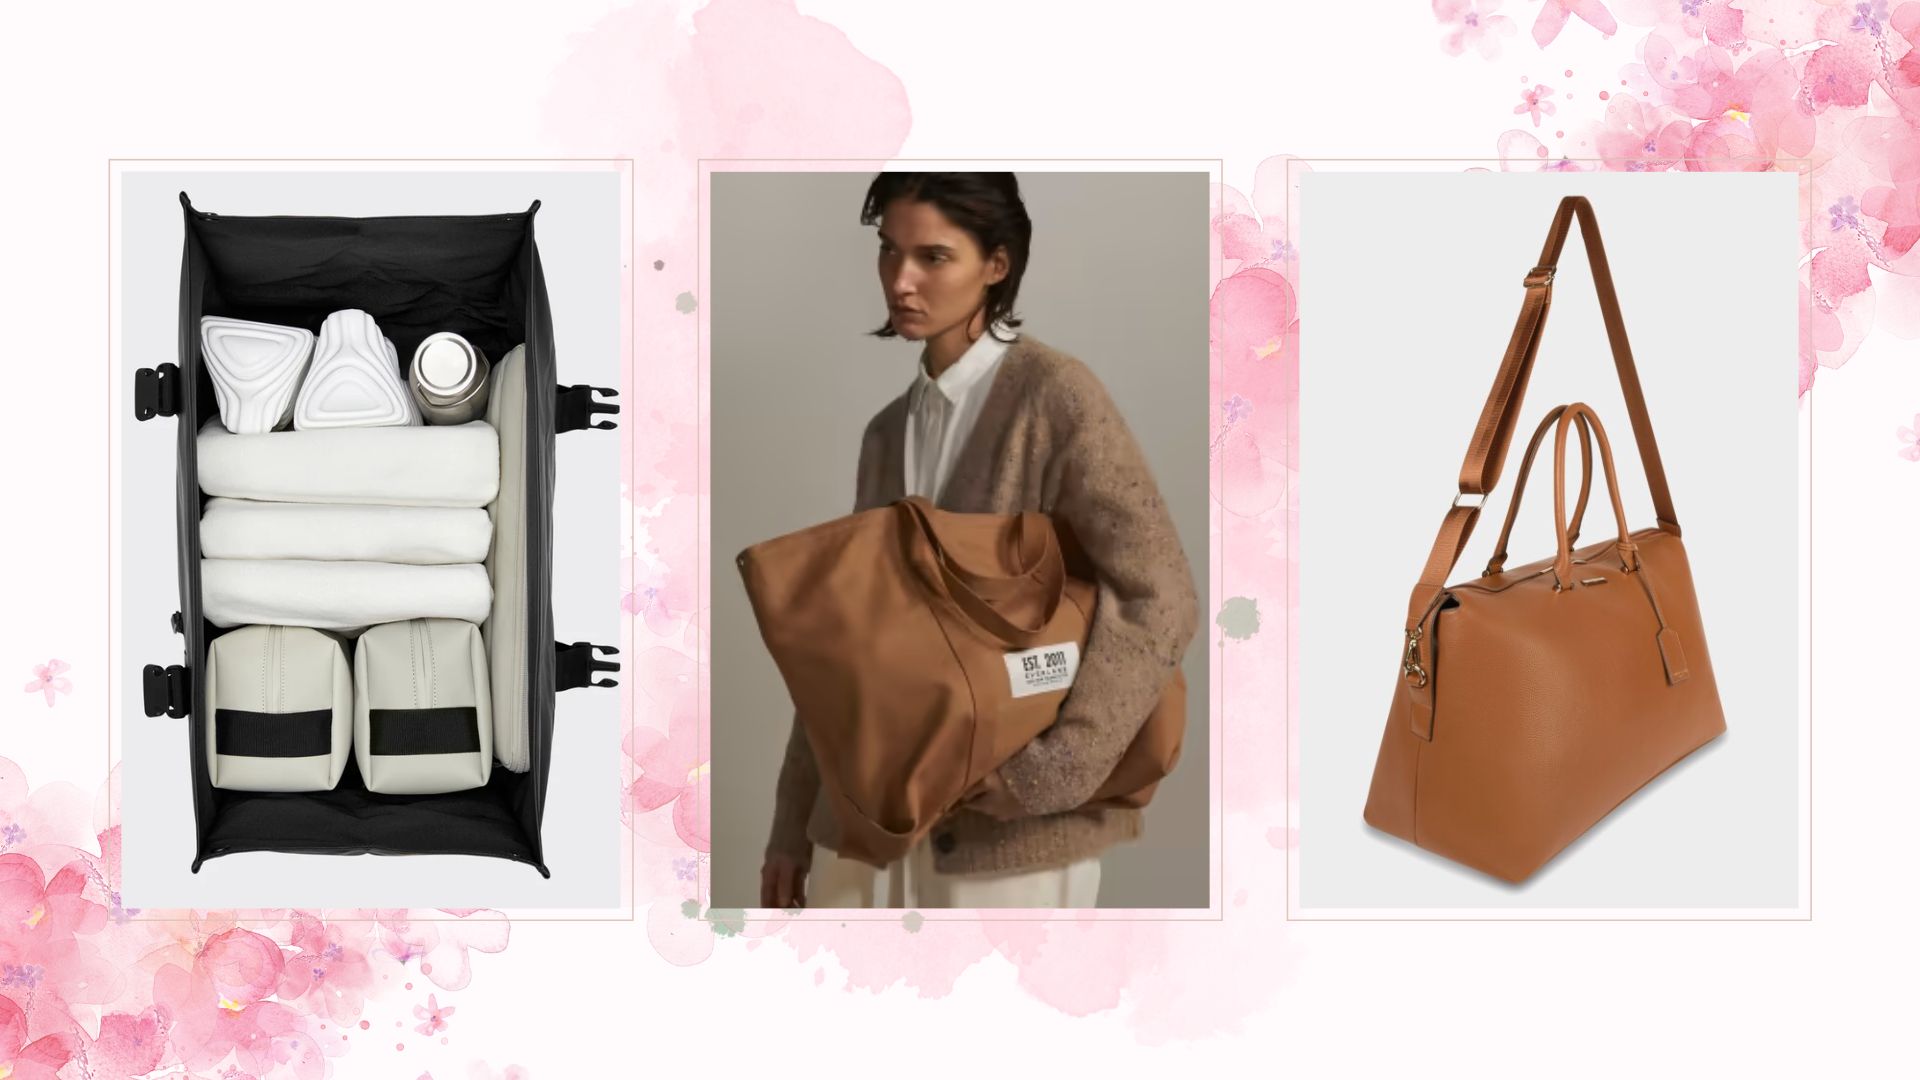 Best weekend bags for women - stylish bags for short breaks